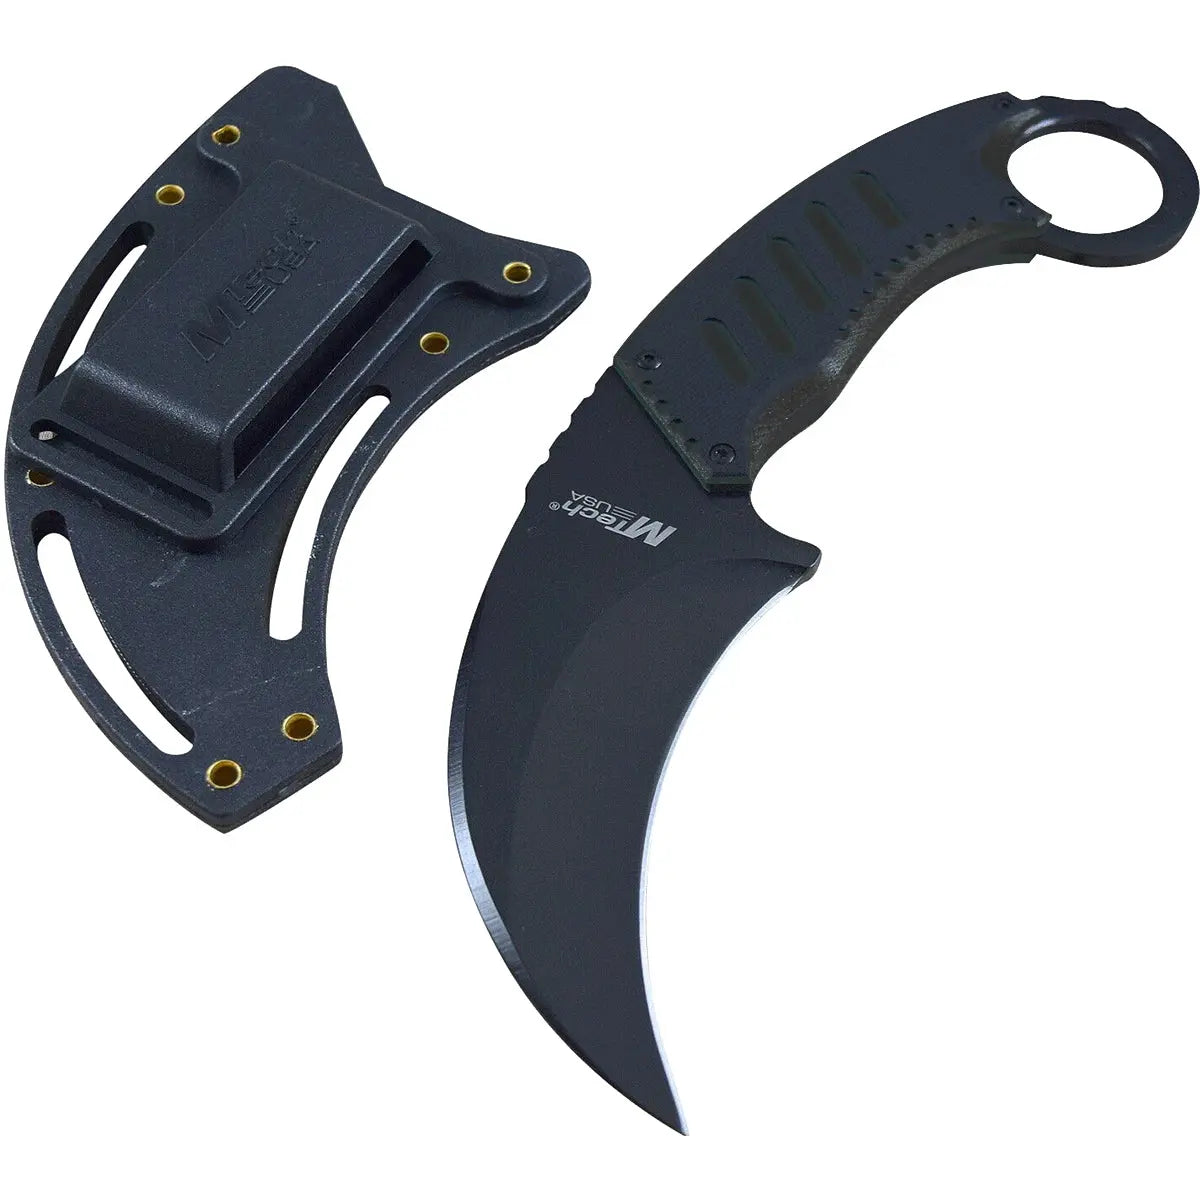 MTech USA Tactical Karambit Fixed Blade Neck Knife, G10, Black/Black, MT-665BK MTech USA